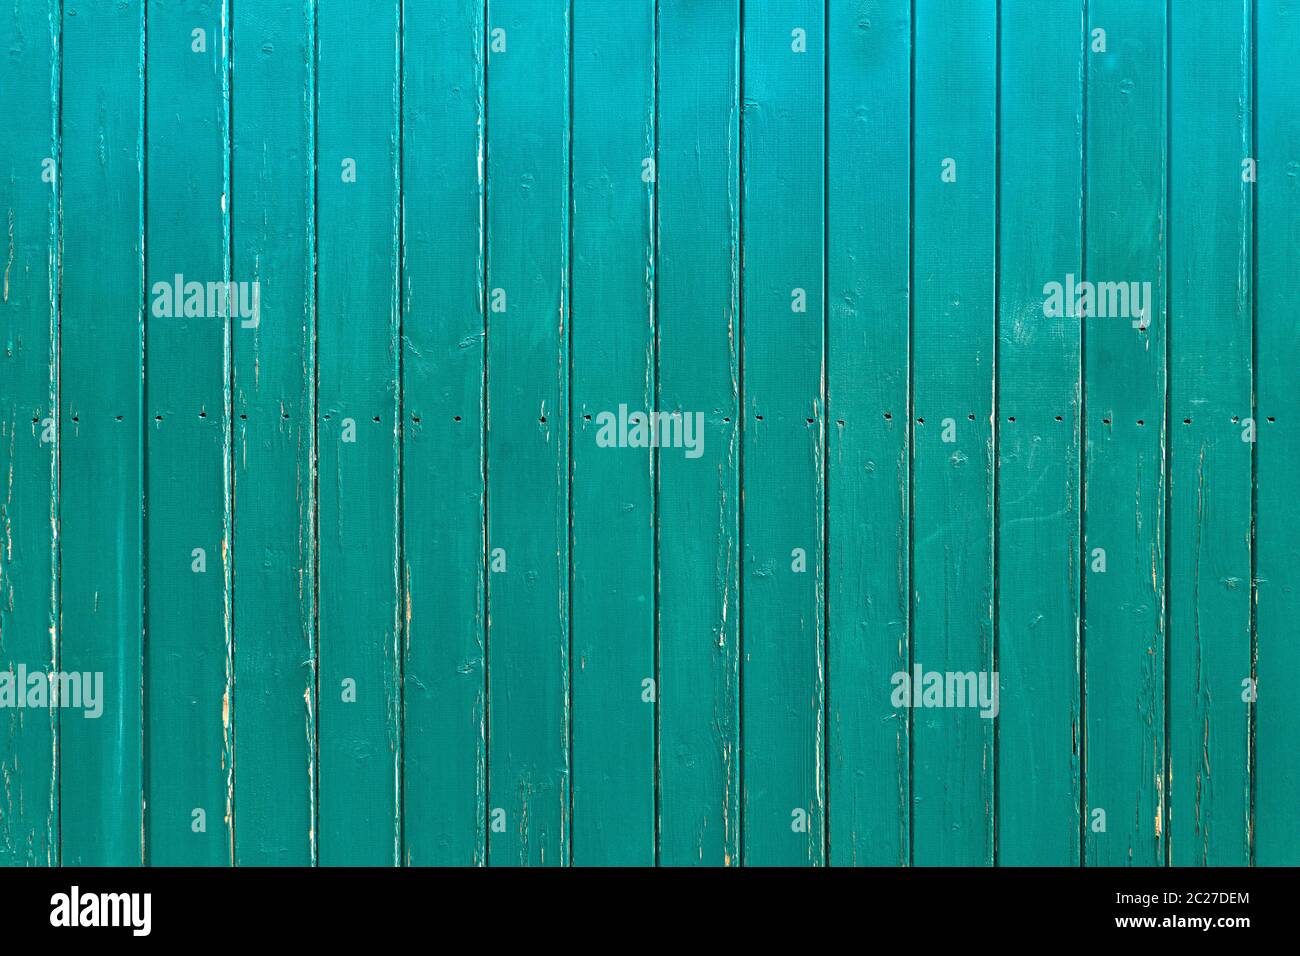 Légèrement abîmé, mur en bois turquoise de planches verticales avec une rangée de trous de vis au milieu Banque D'Images